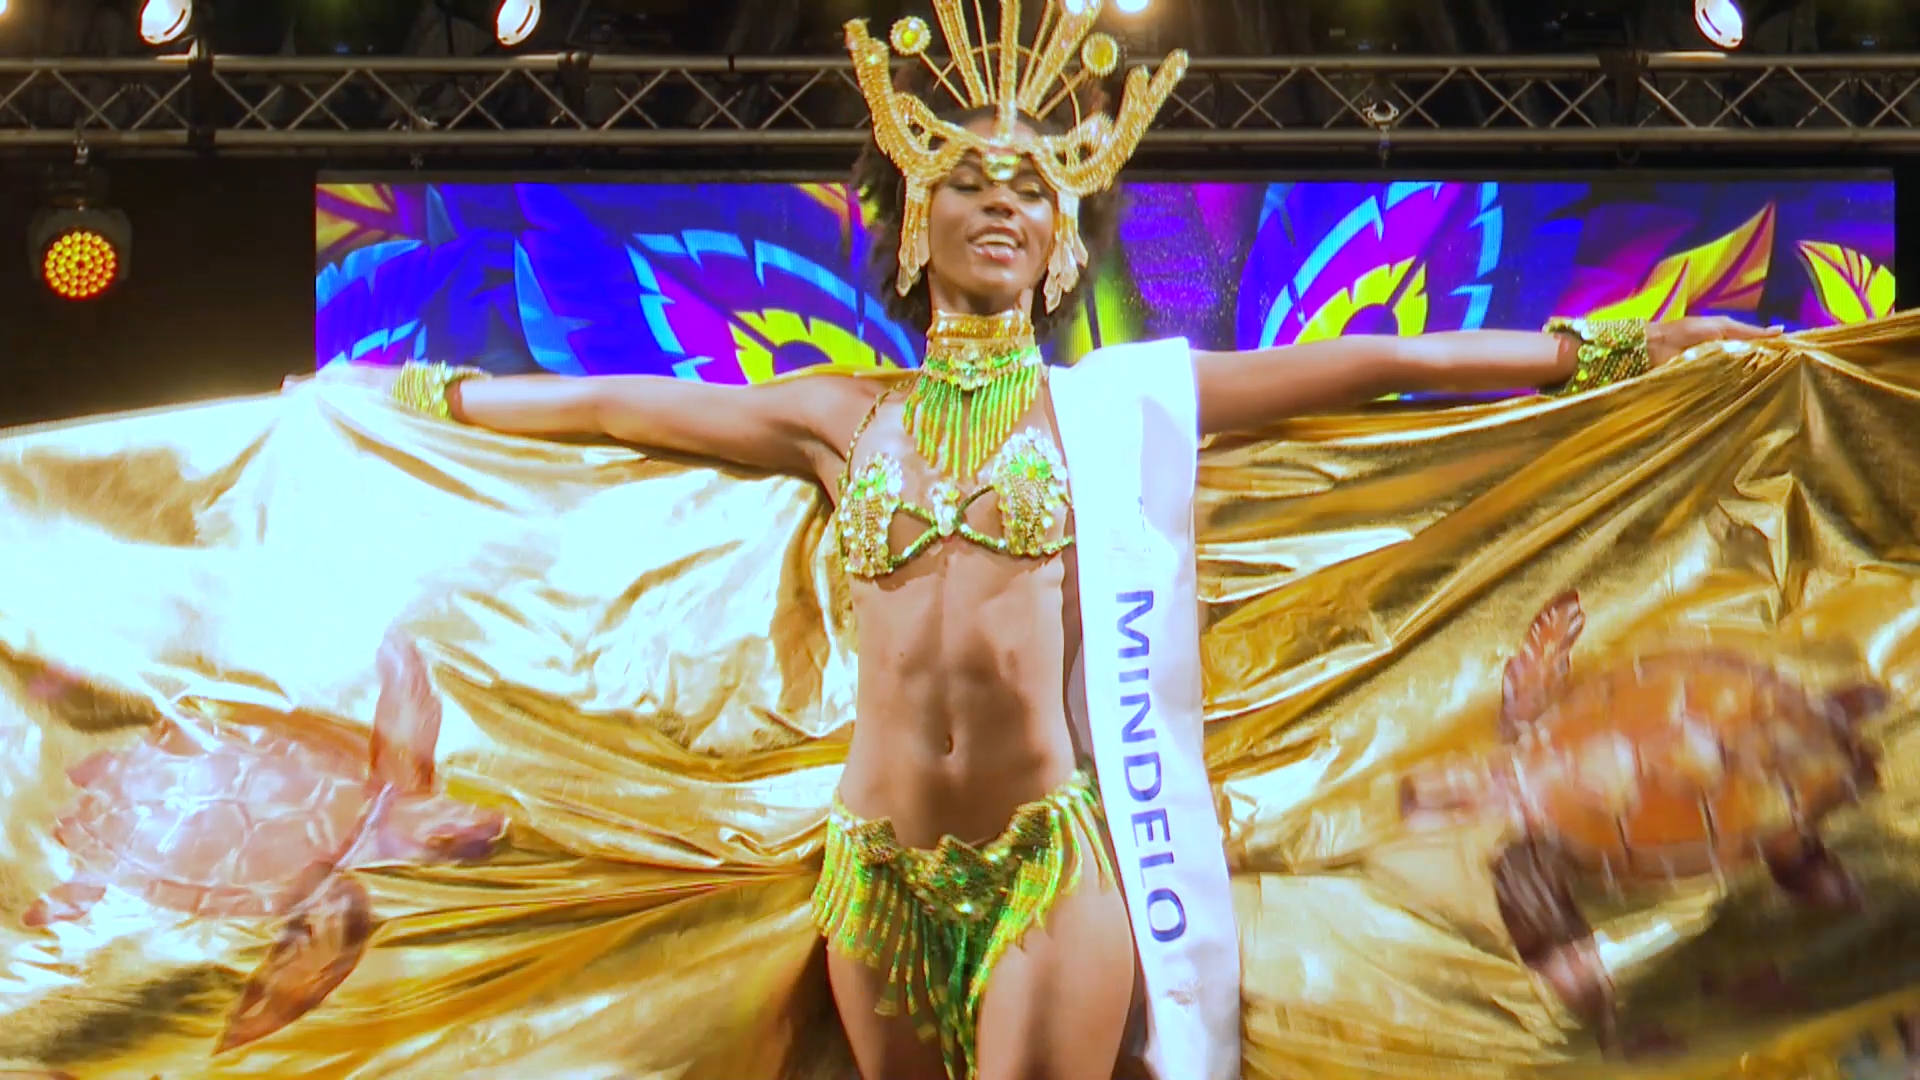 Stephany Amado vivencia sonho com os cabo-verdianos na Miss Internacional